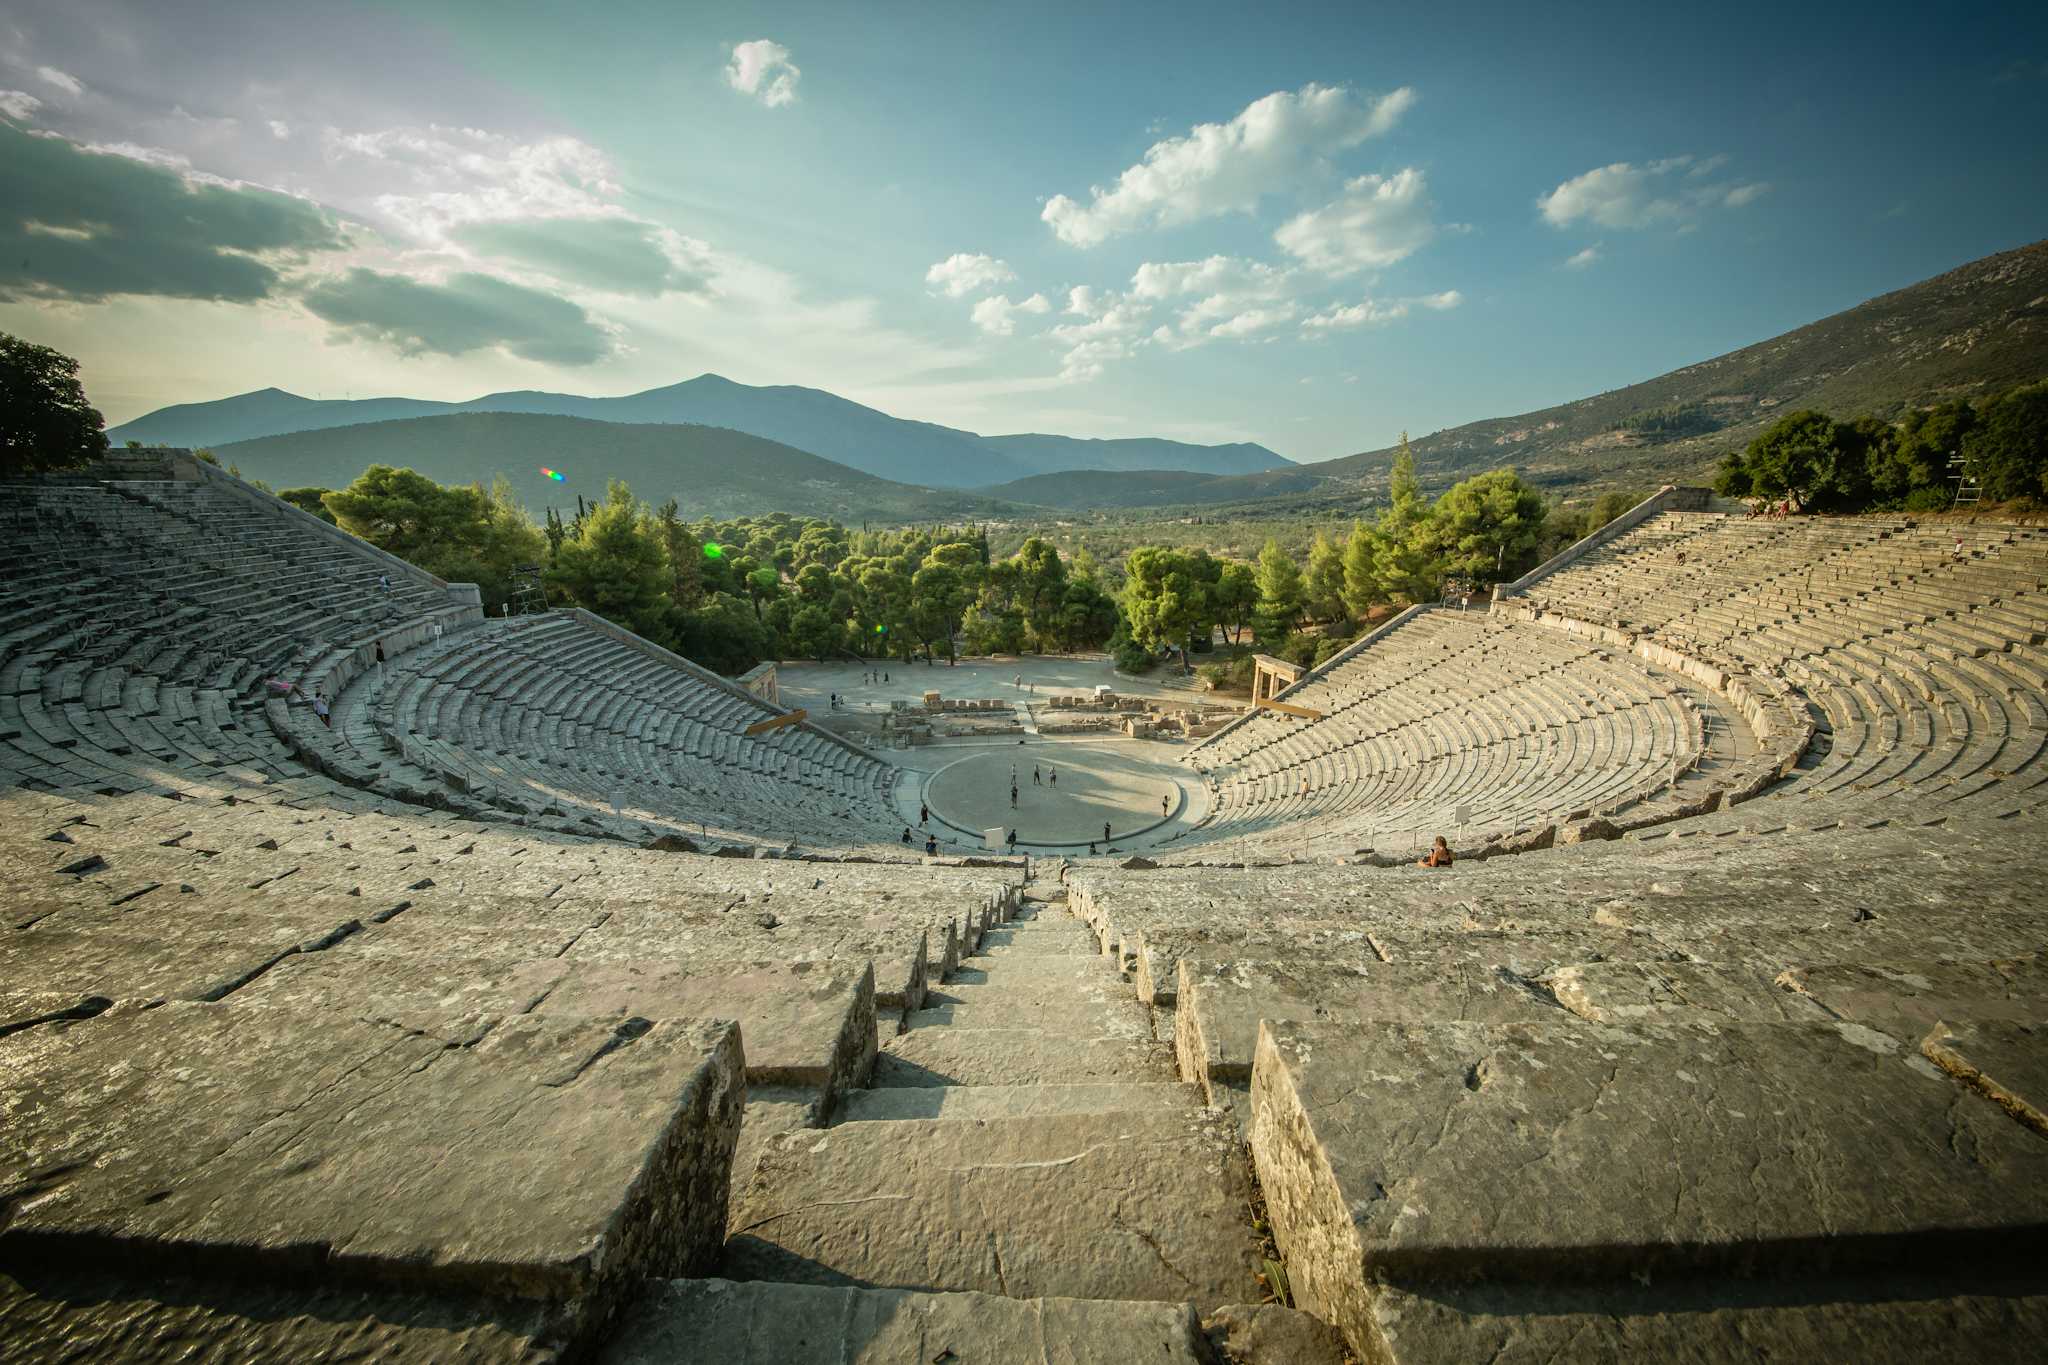 The Great Theatre of Epidaurus